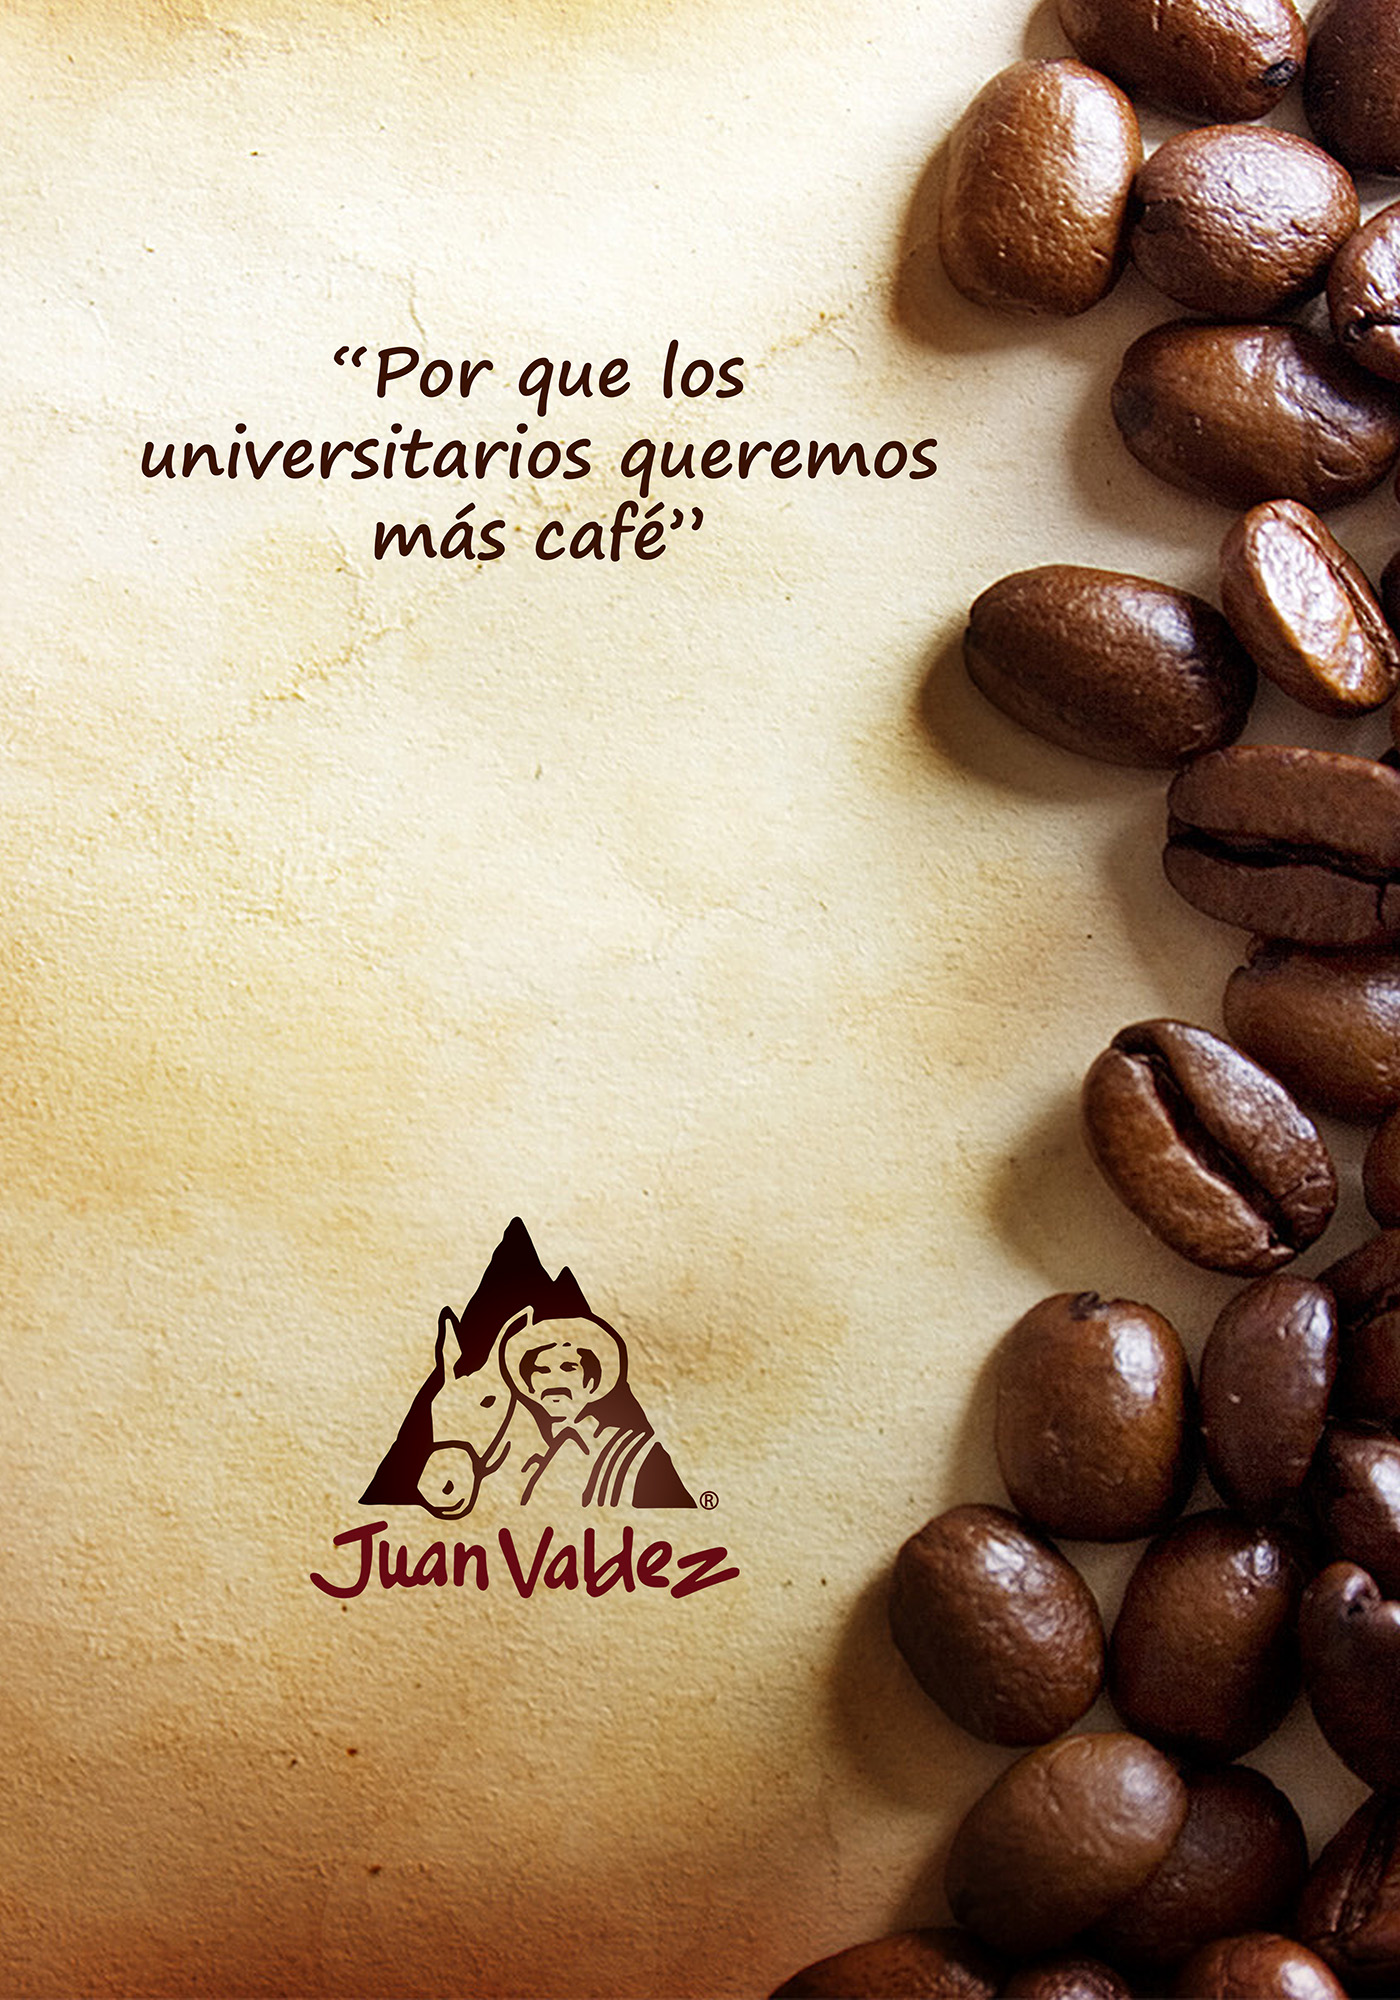 diseño diseñador Juan Valdez colombia photoshop ilustracion ilustrator cafe Coffee tierra universidad universitario publicidad mundial gente